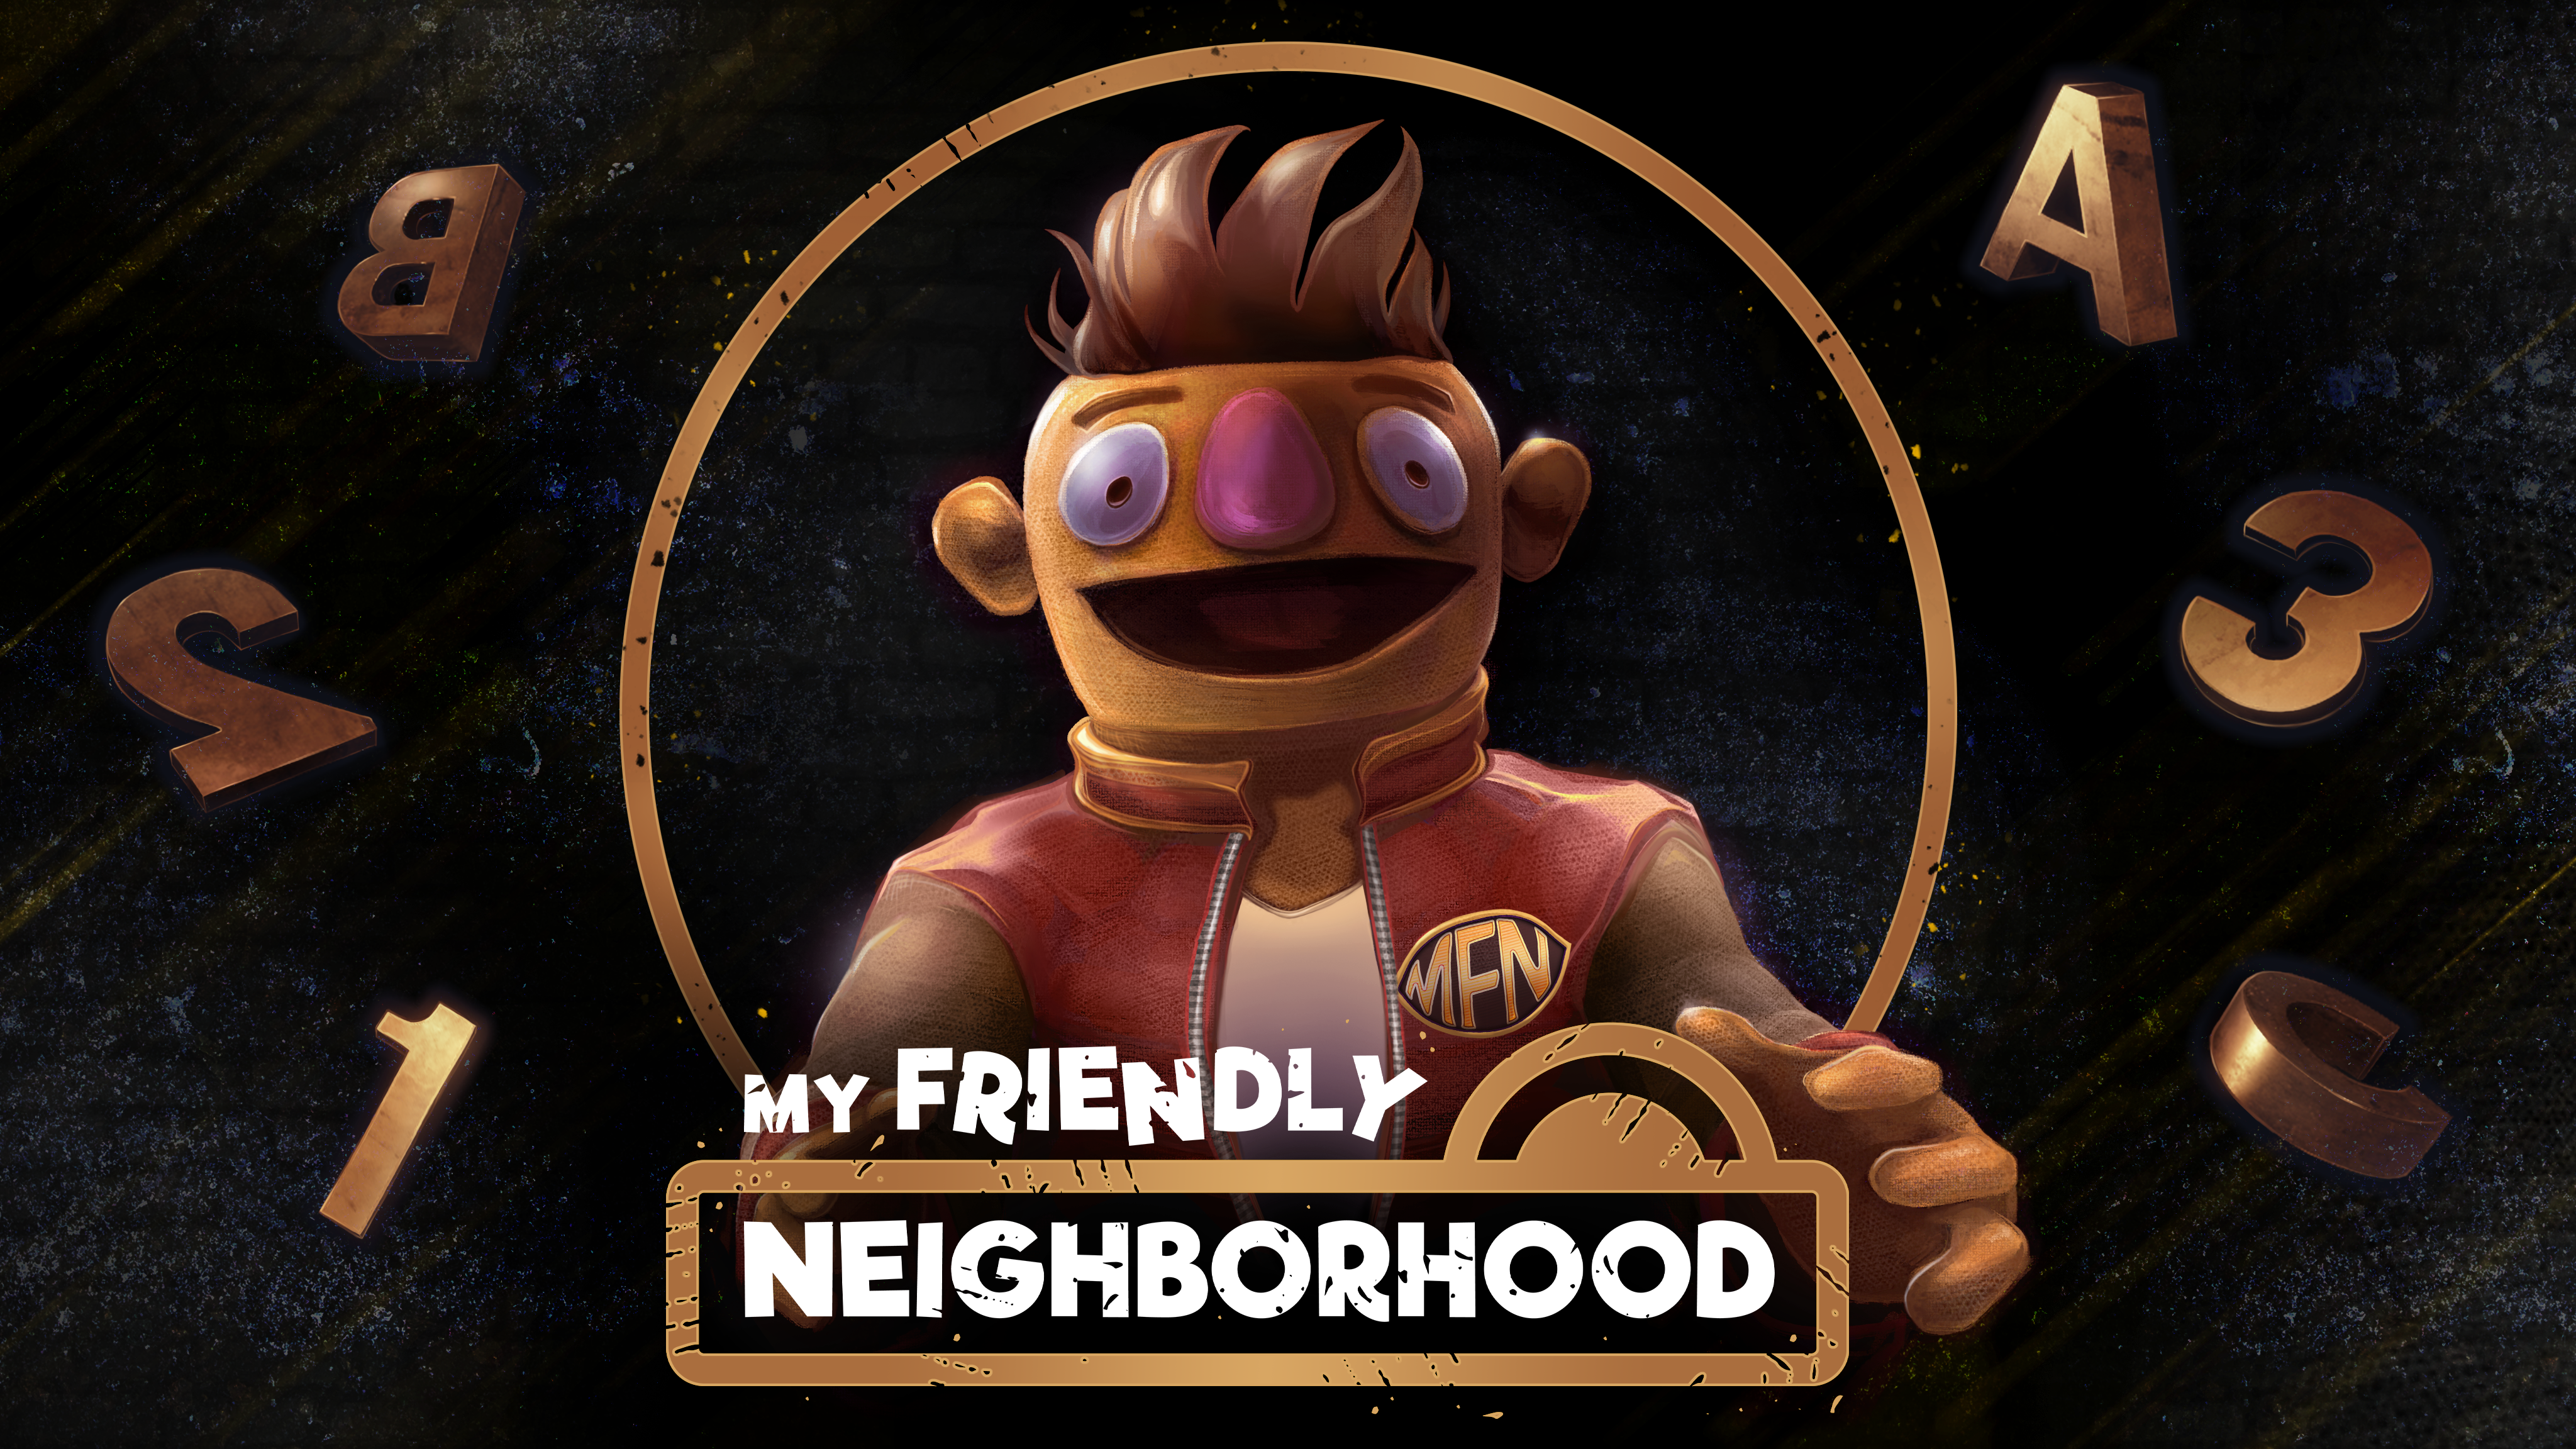 My friend forgotten. My friendly neighborhood game. My friendly neighborhood логотип. Май френдли нейборхуд. My friendly neighborhood Demo.